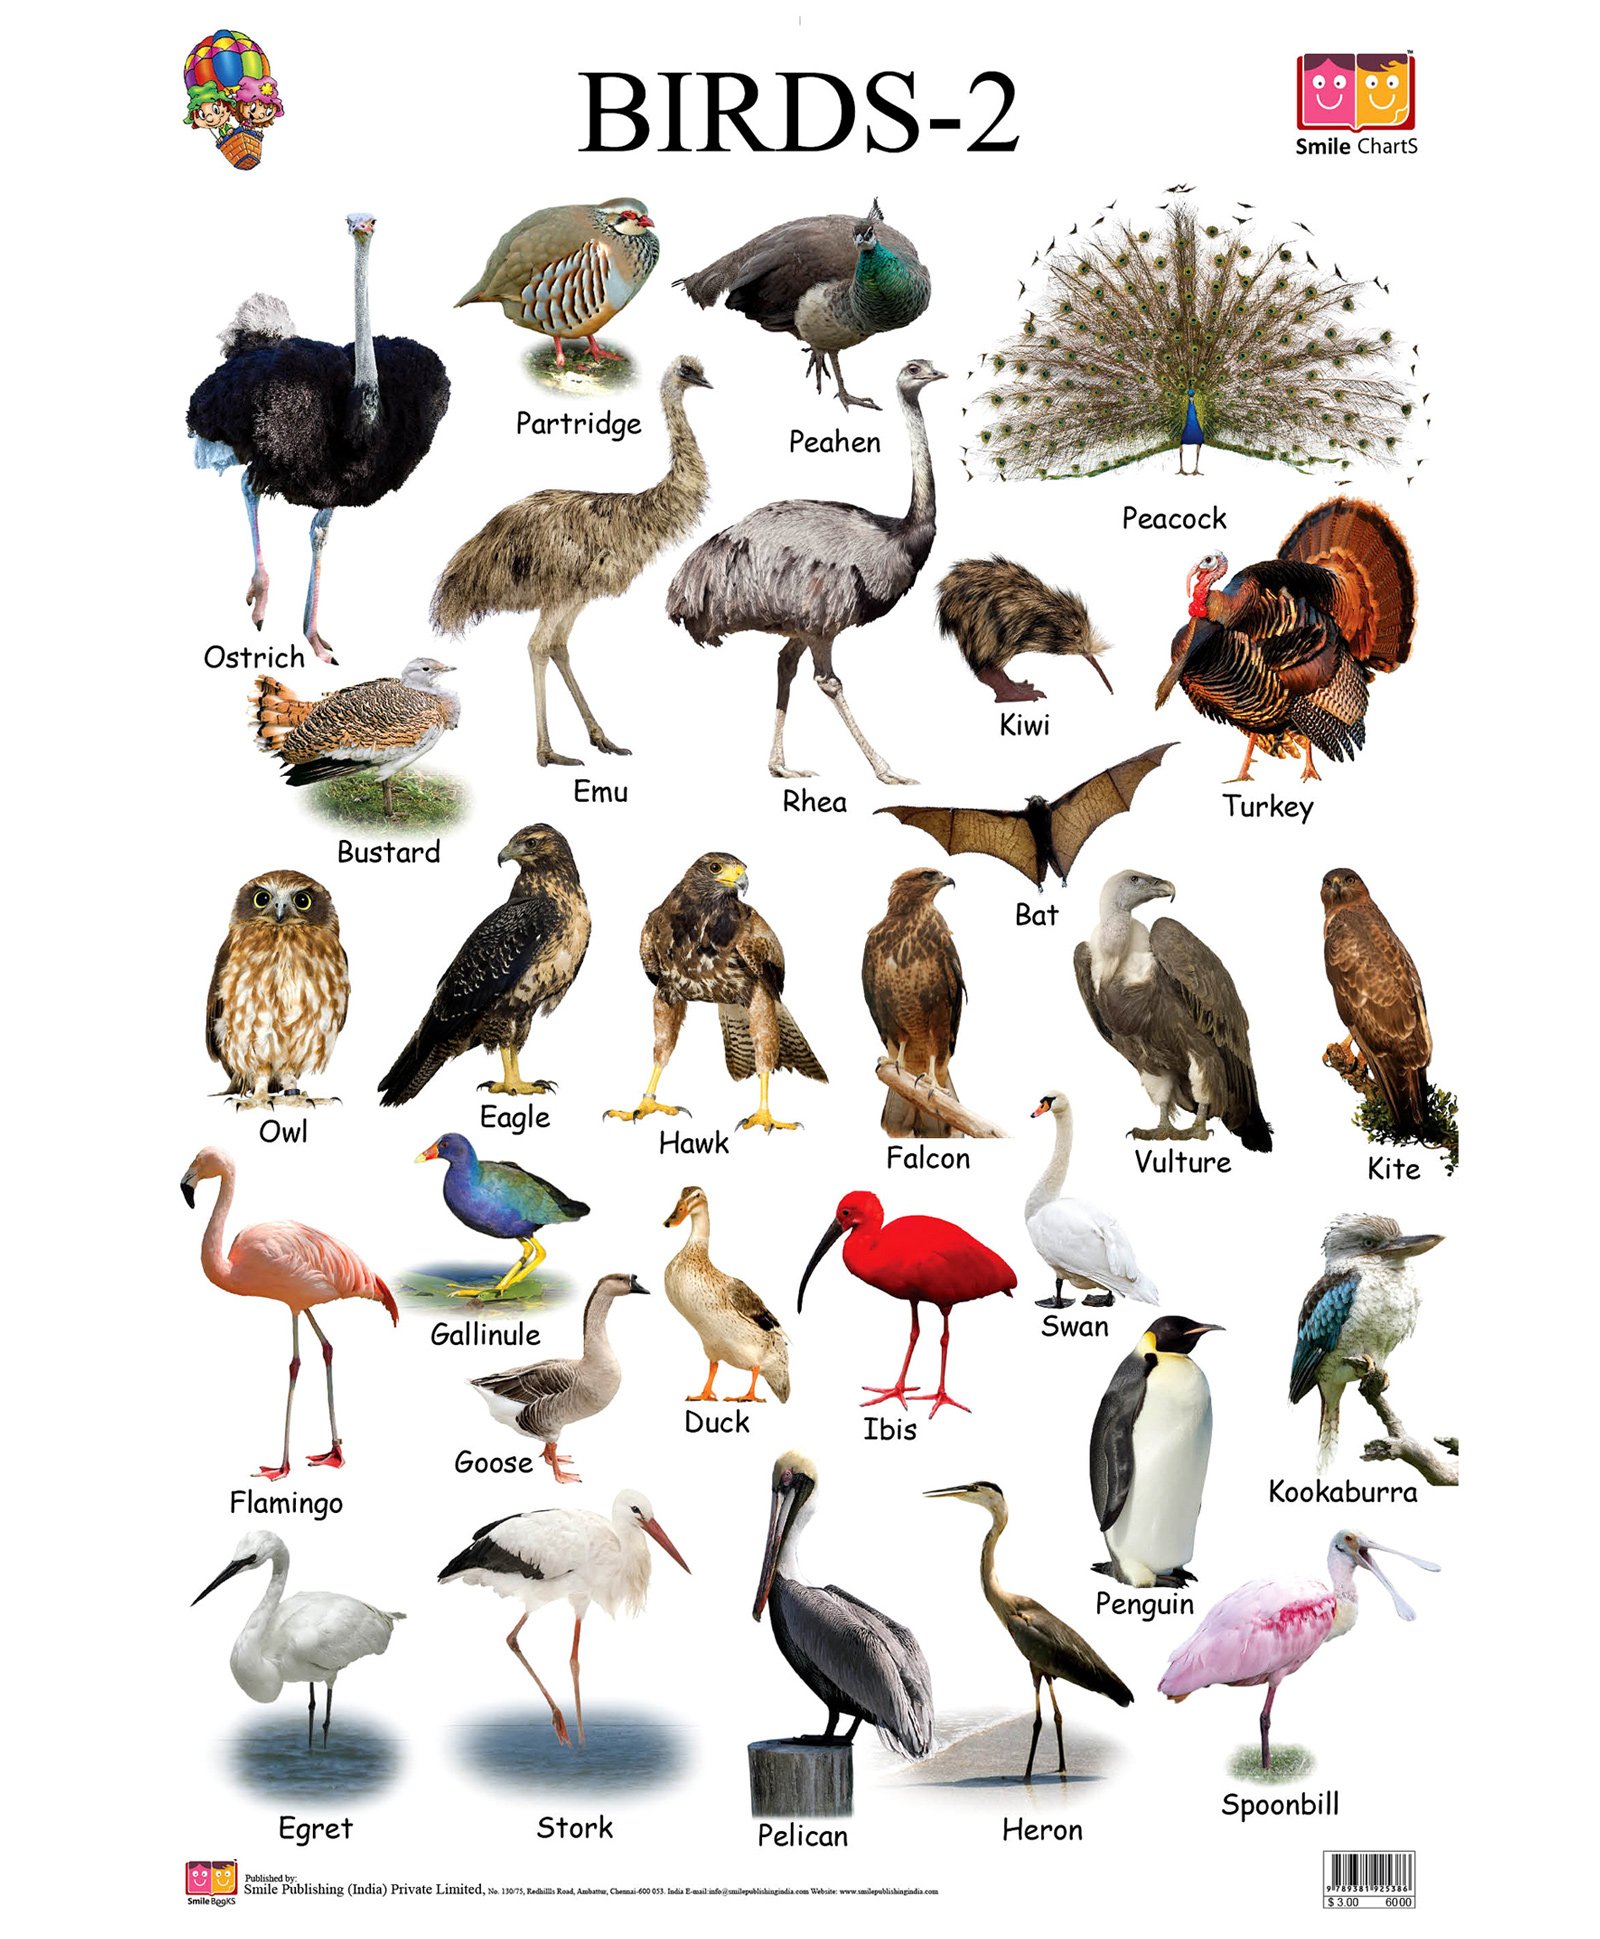 Перевести птиц на английский. Название животных и птиц. Птицы на английском. Название птиц по английскому. Названия птиц на английском.